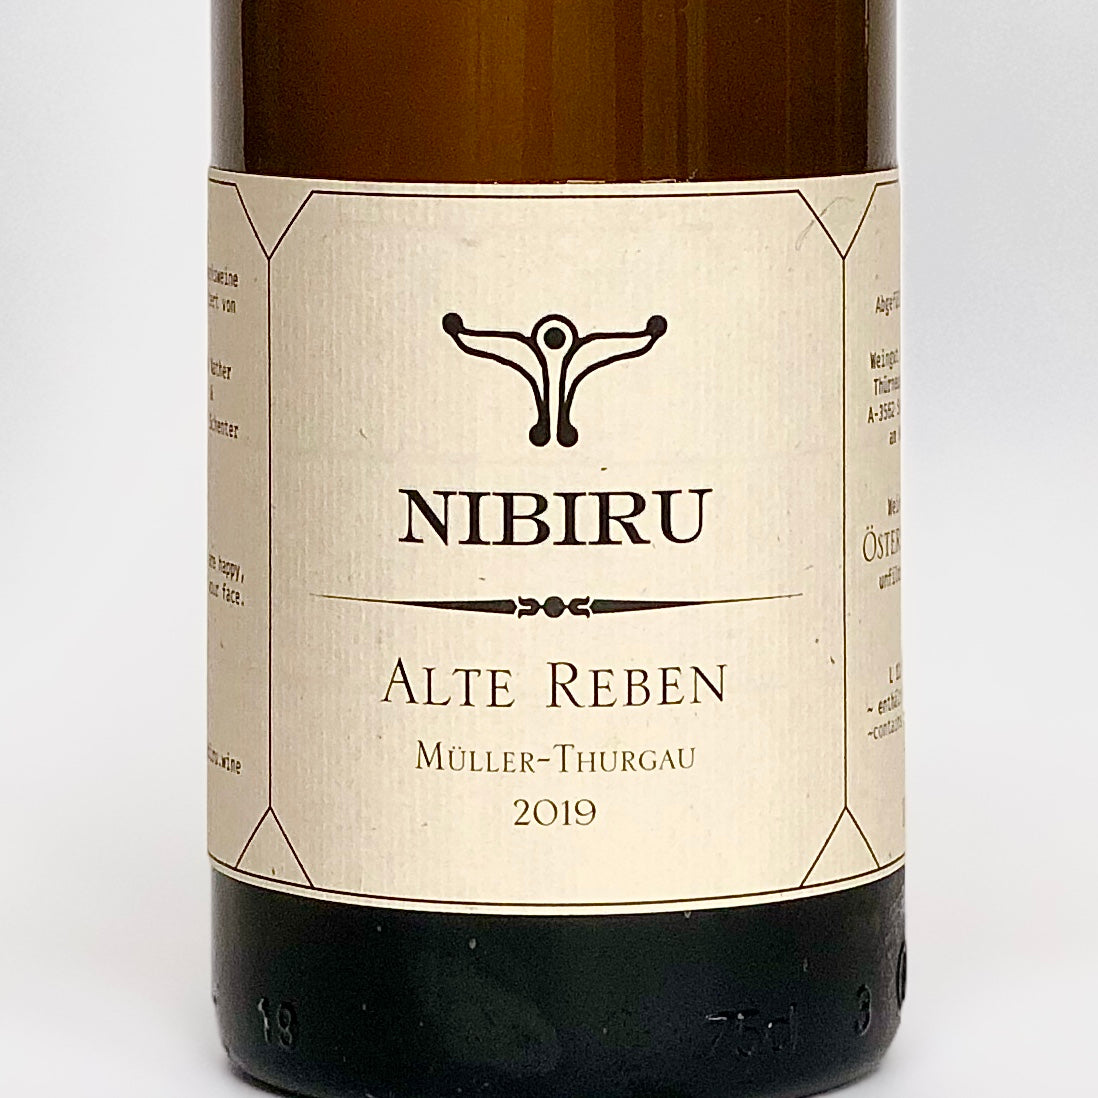 Nibiru Alte Reben Müller-Thurgau 2019 - ニビル アルテ・レーベン・ミュラー・トゥルガウ 2019